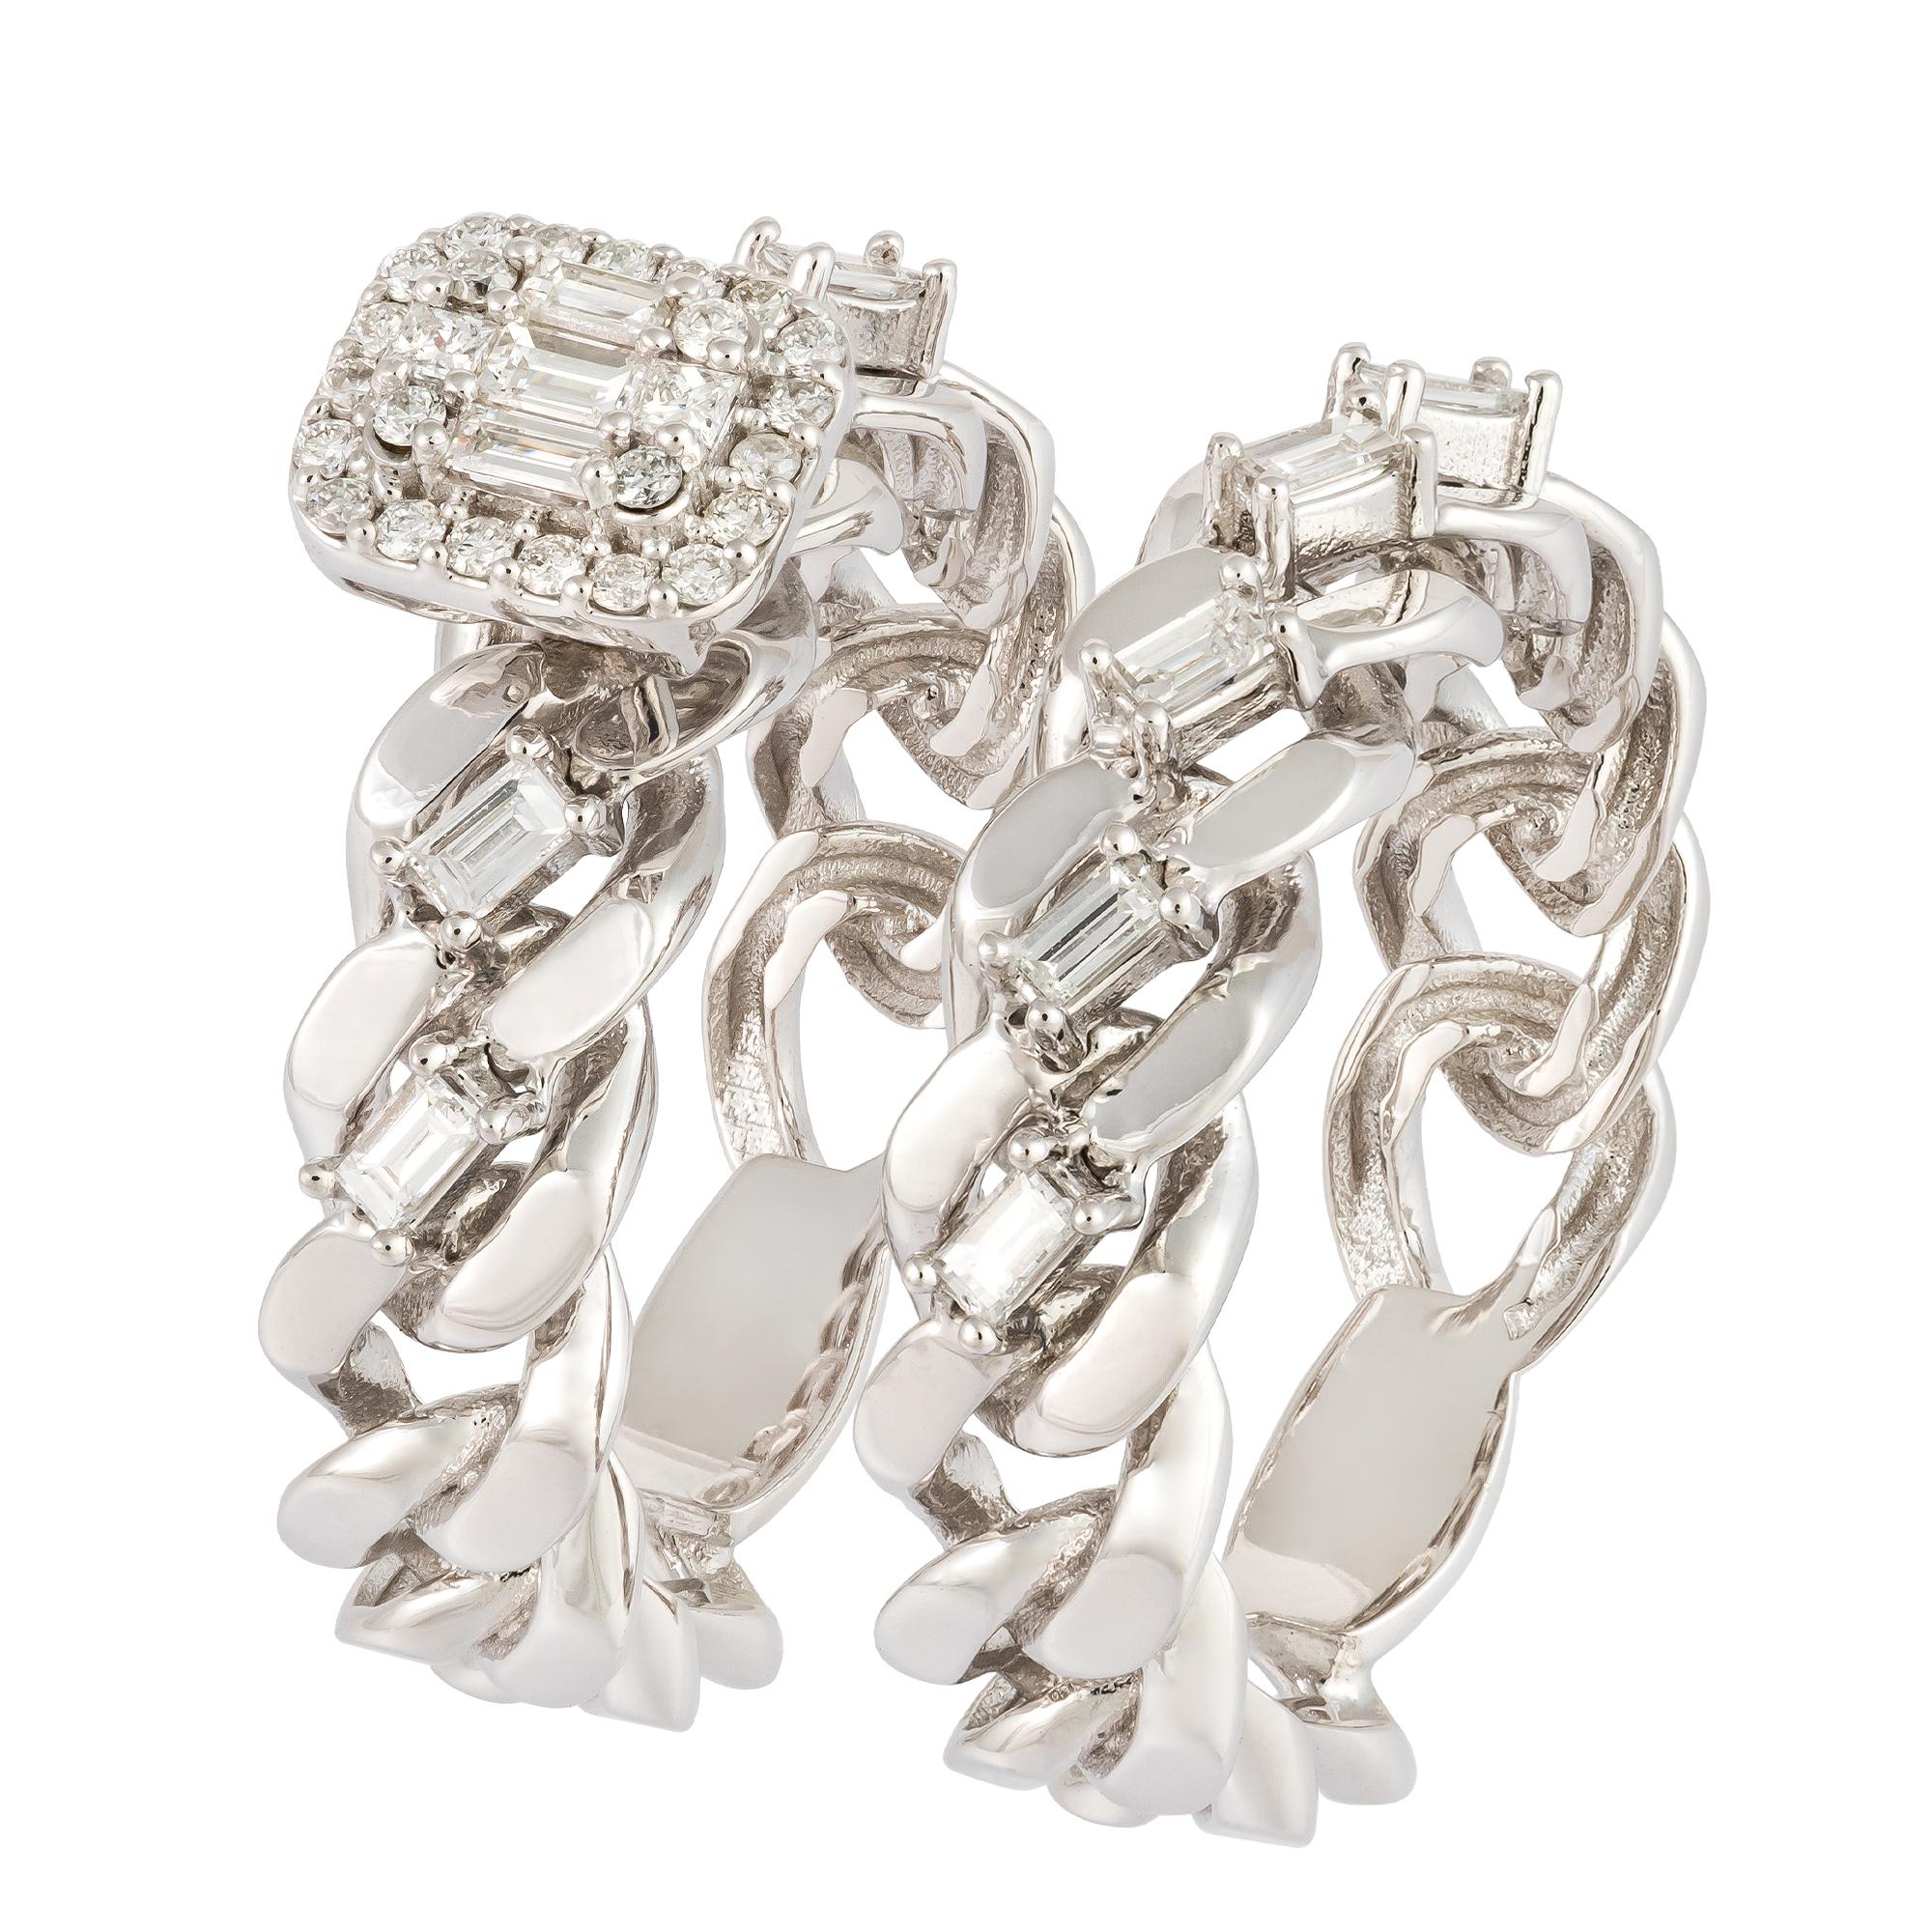 For Sale:  Breathtaking White 18K Gold White Diamond Ring For Her 4